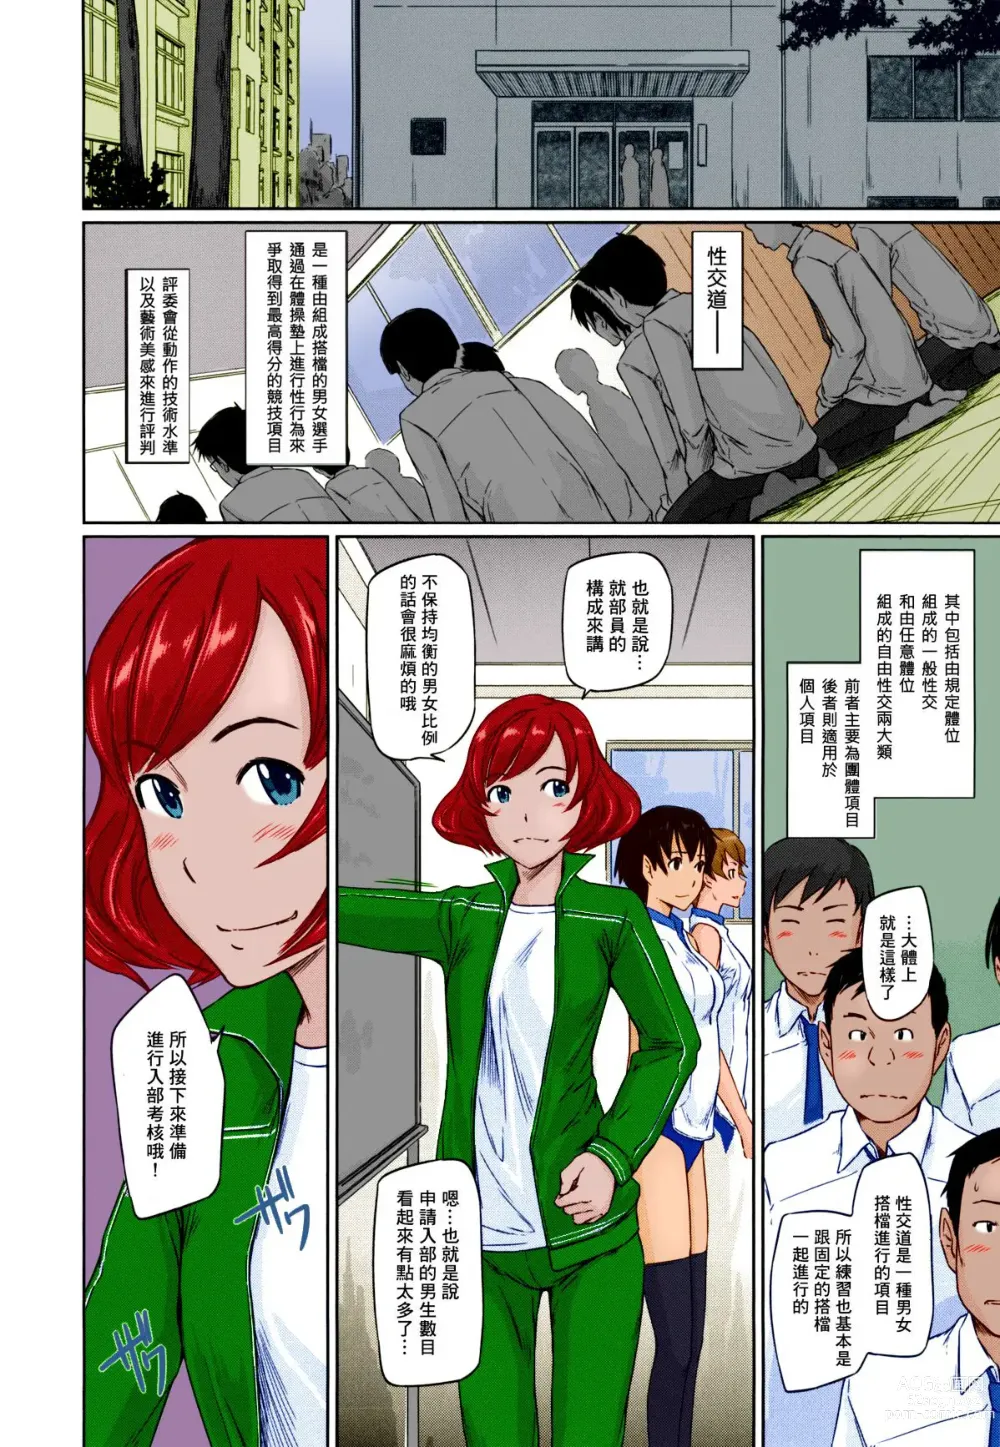 Page 13 of manga Suki ni nattara itchokusen!